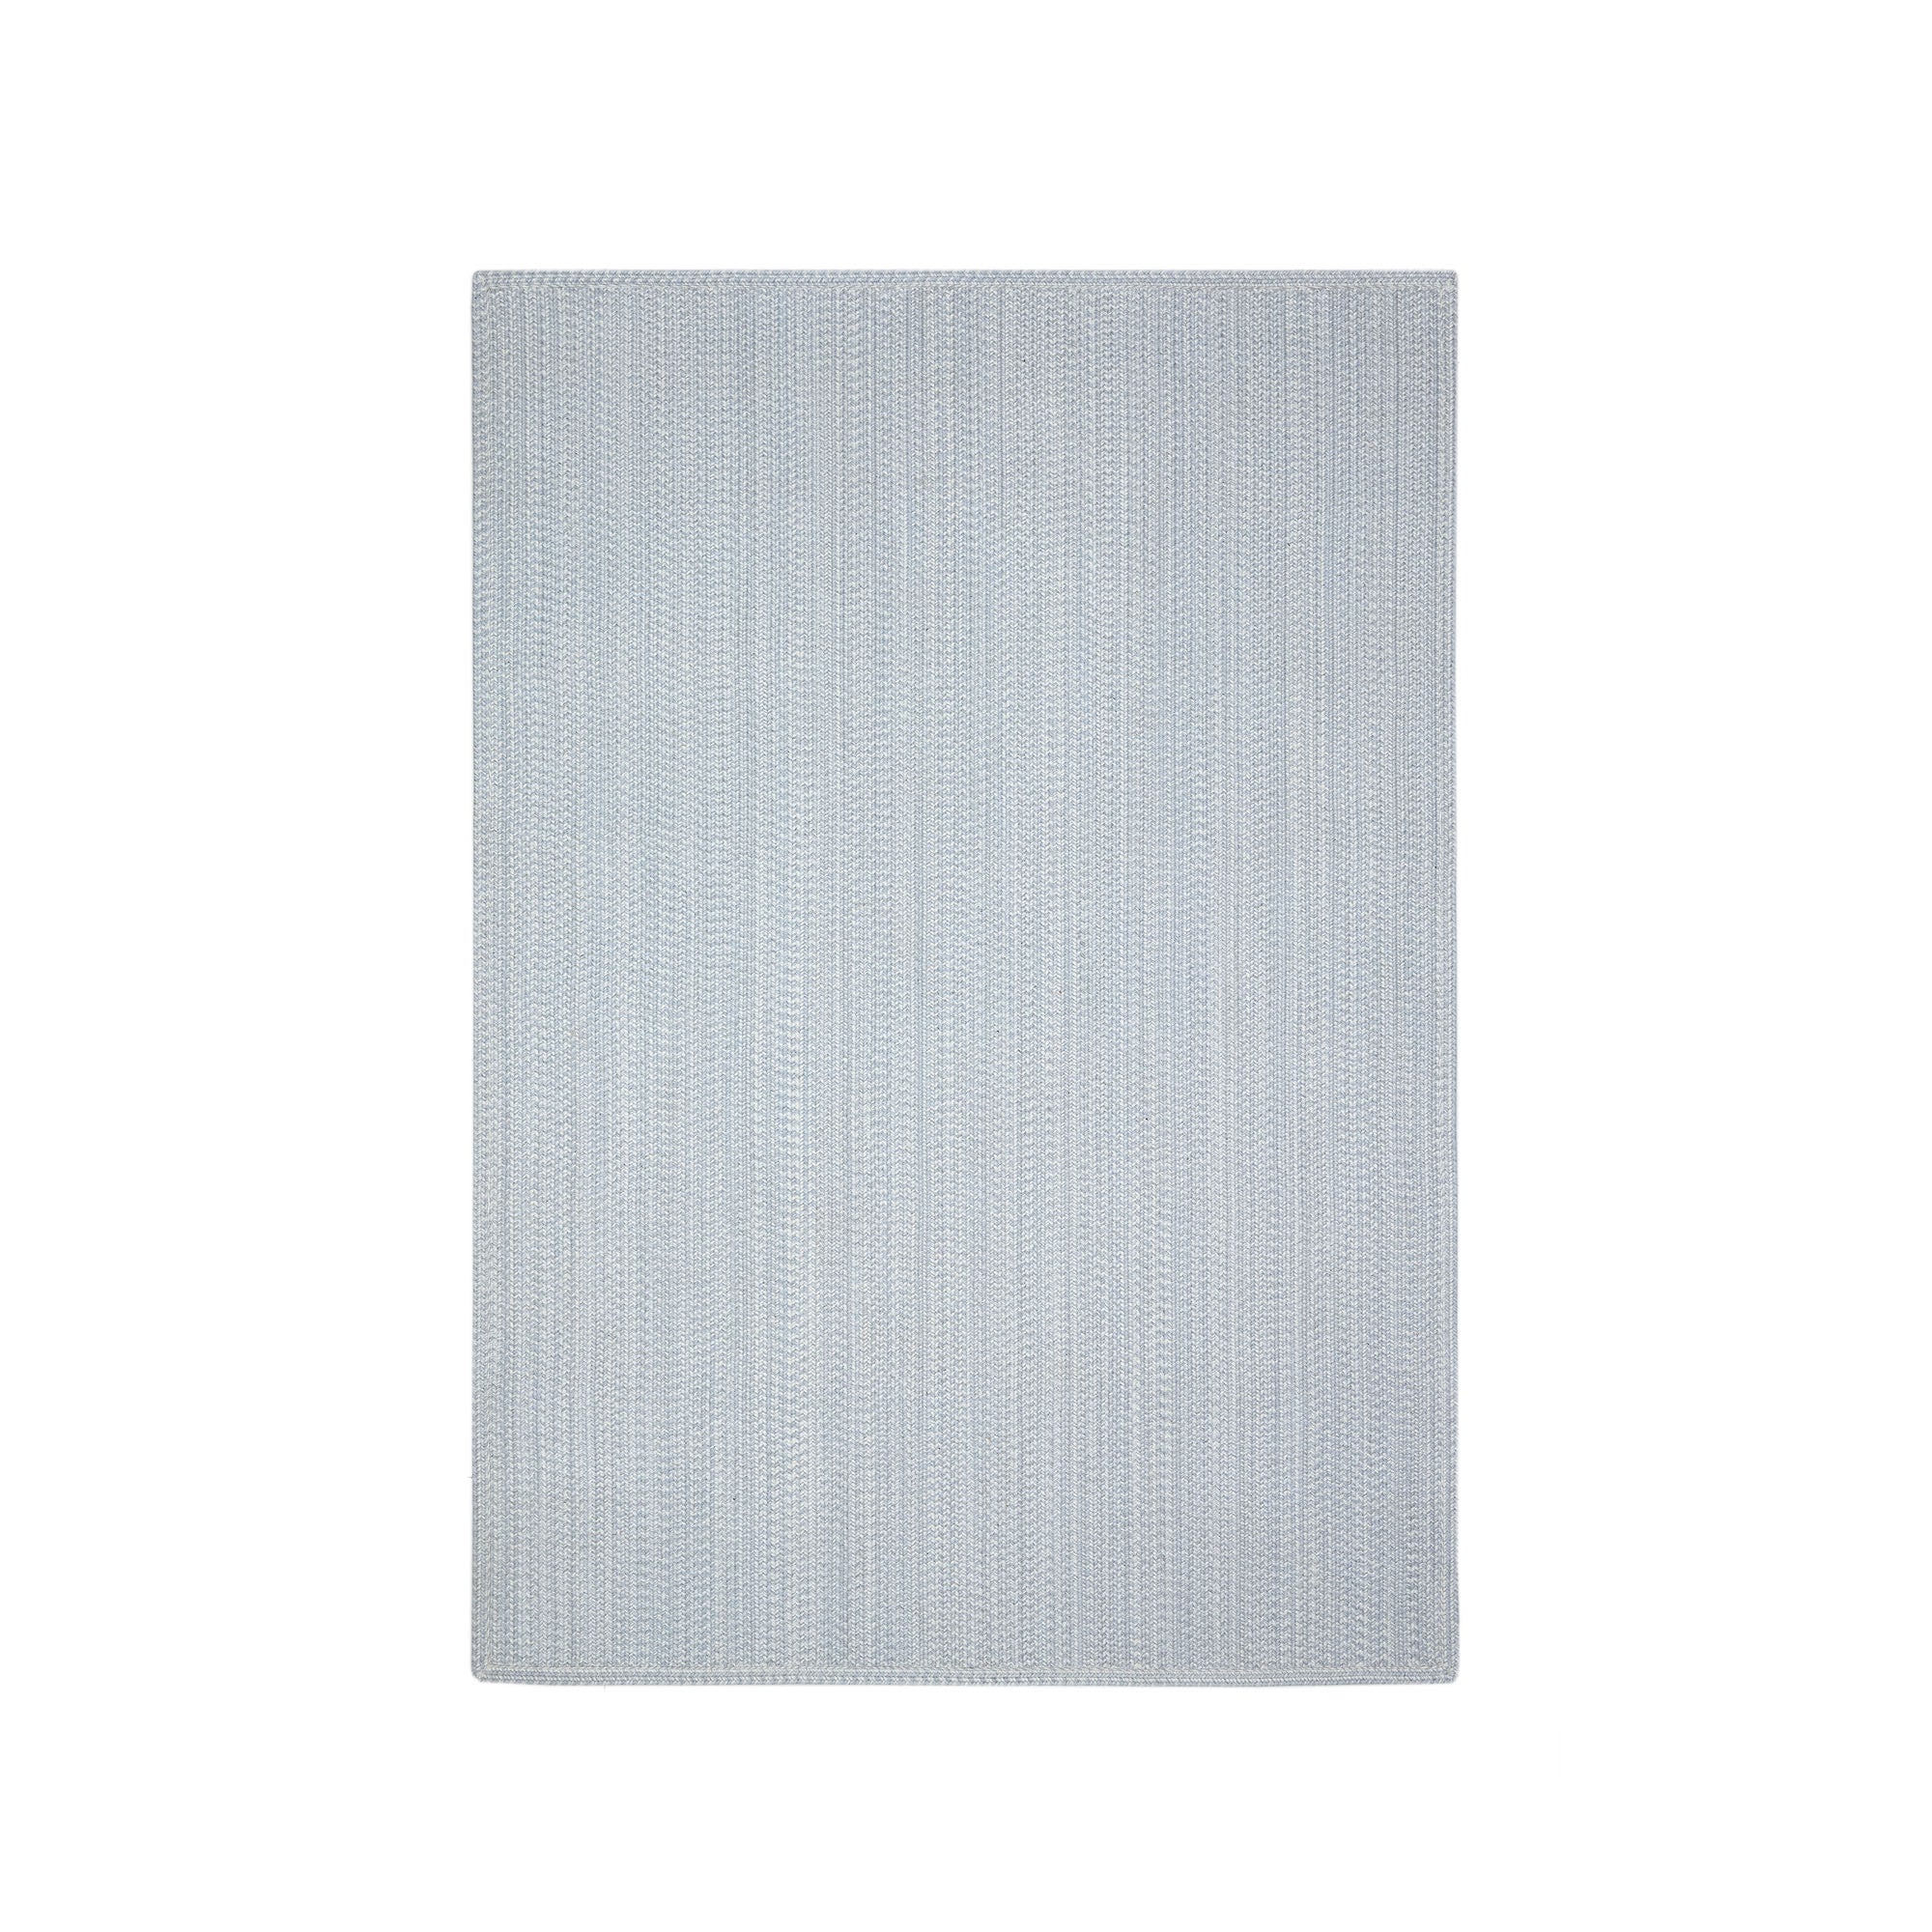 Portopi 100% PET szőnyeg szürke színben, 160 x 230 cm